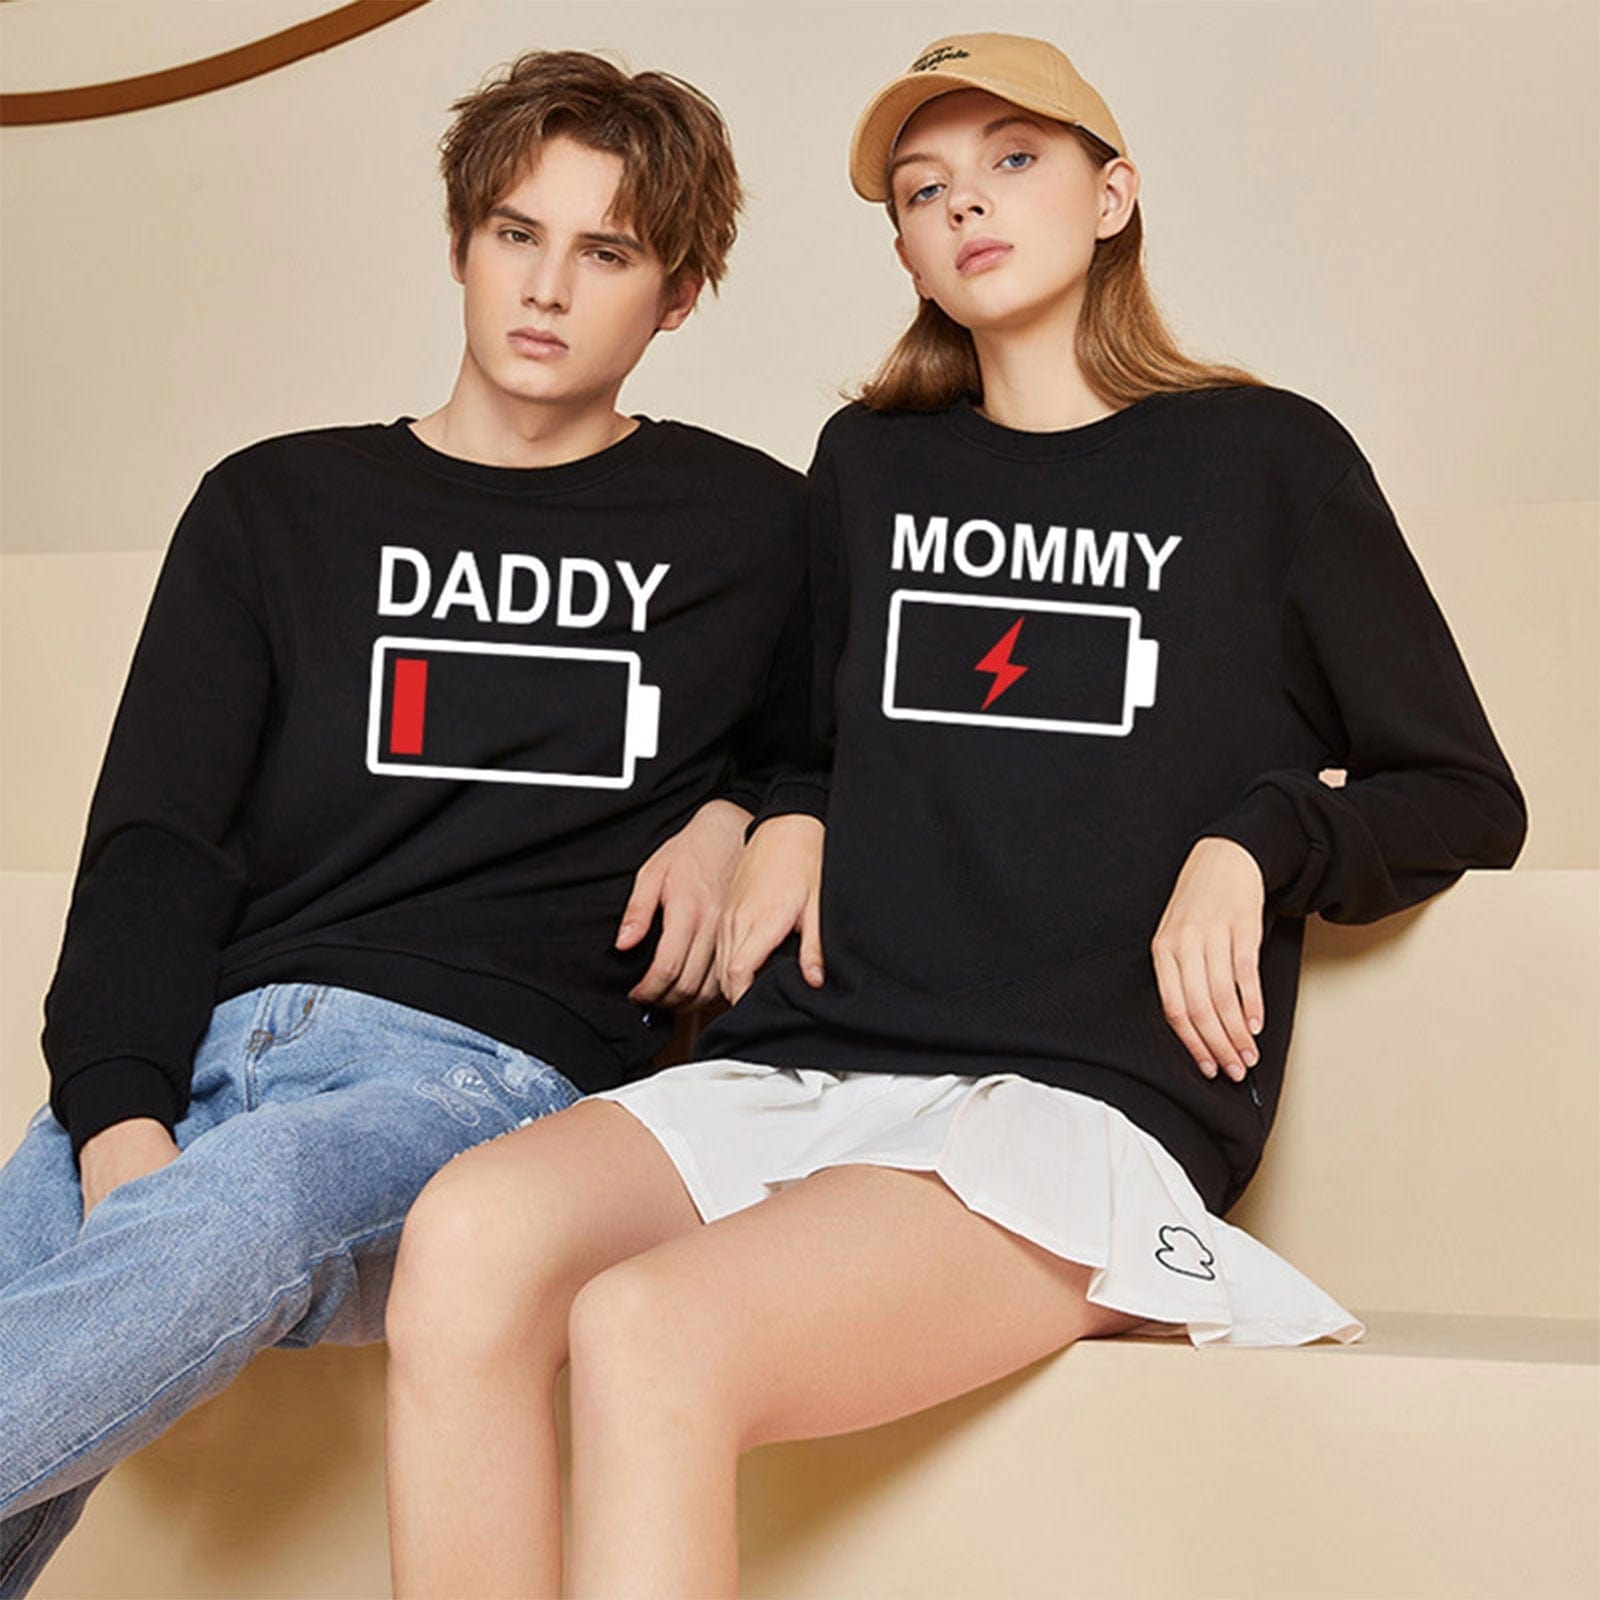 Daddy & Mommy Couple Sweatshirt